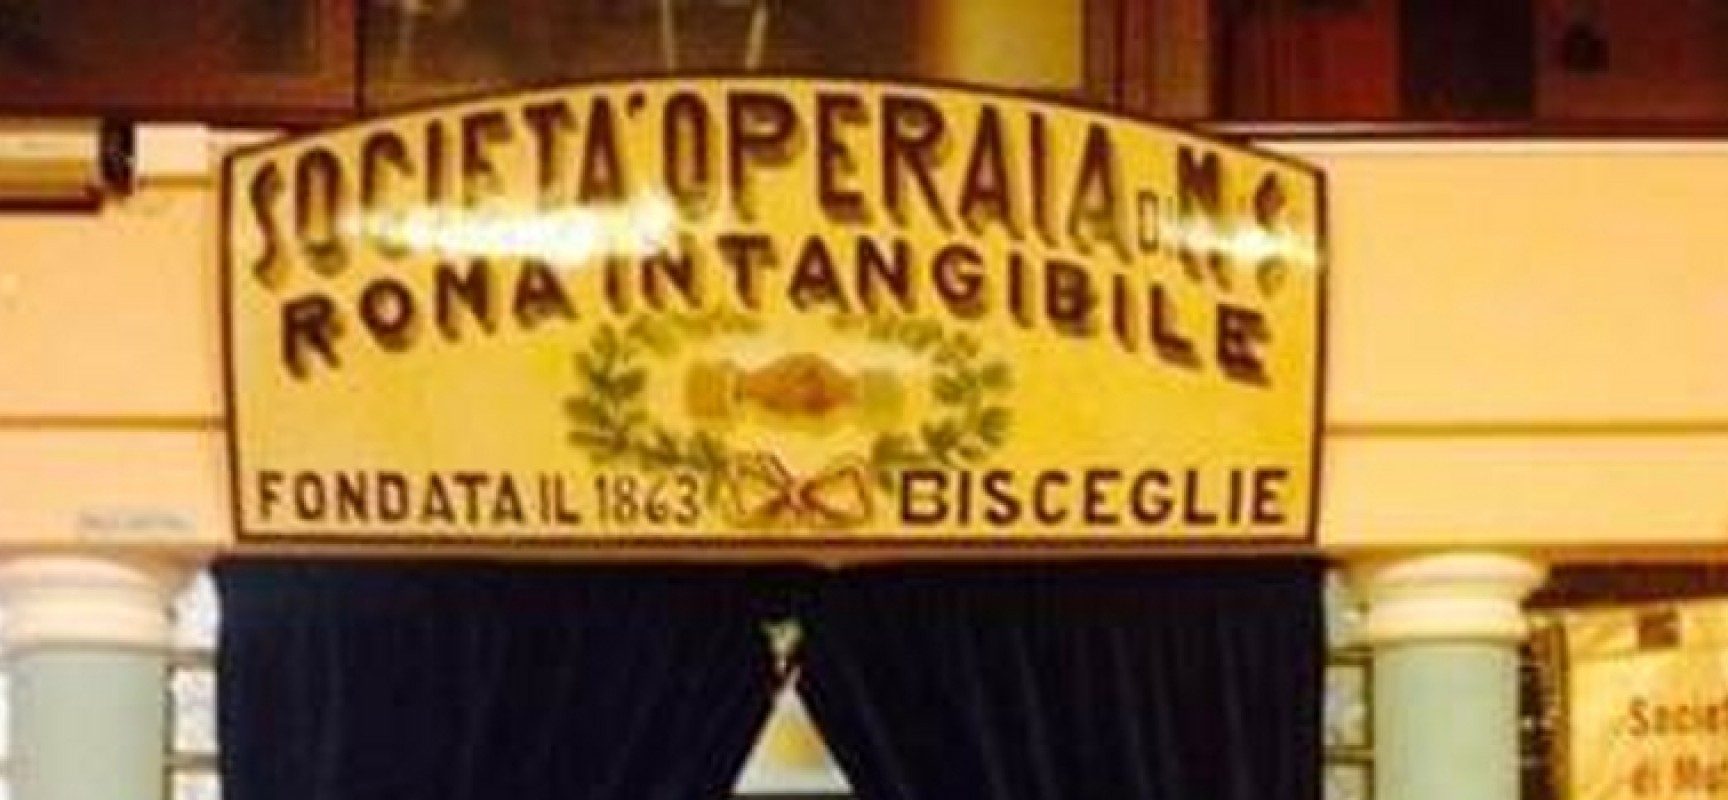 Roma Intangibile organizza il concerto “In…canto d’amore”